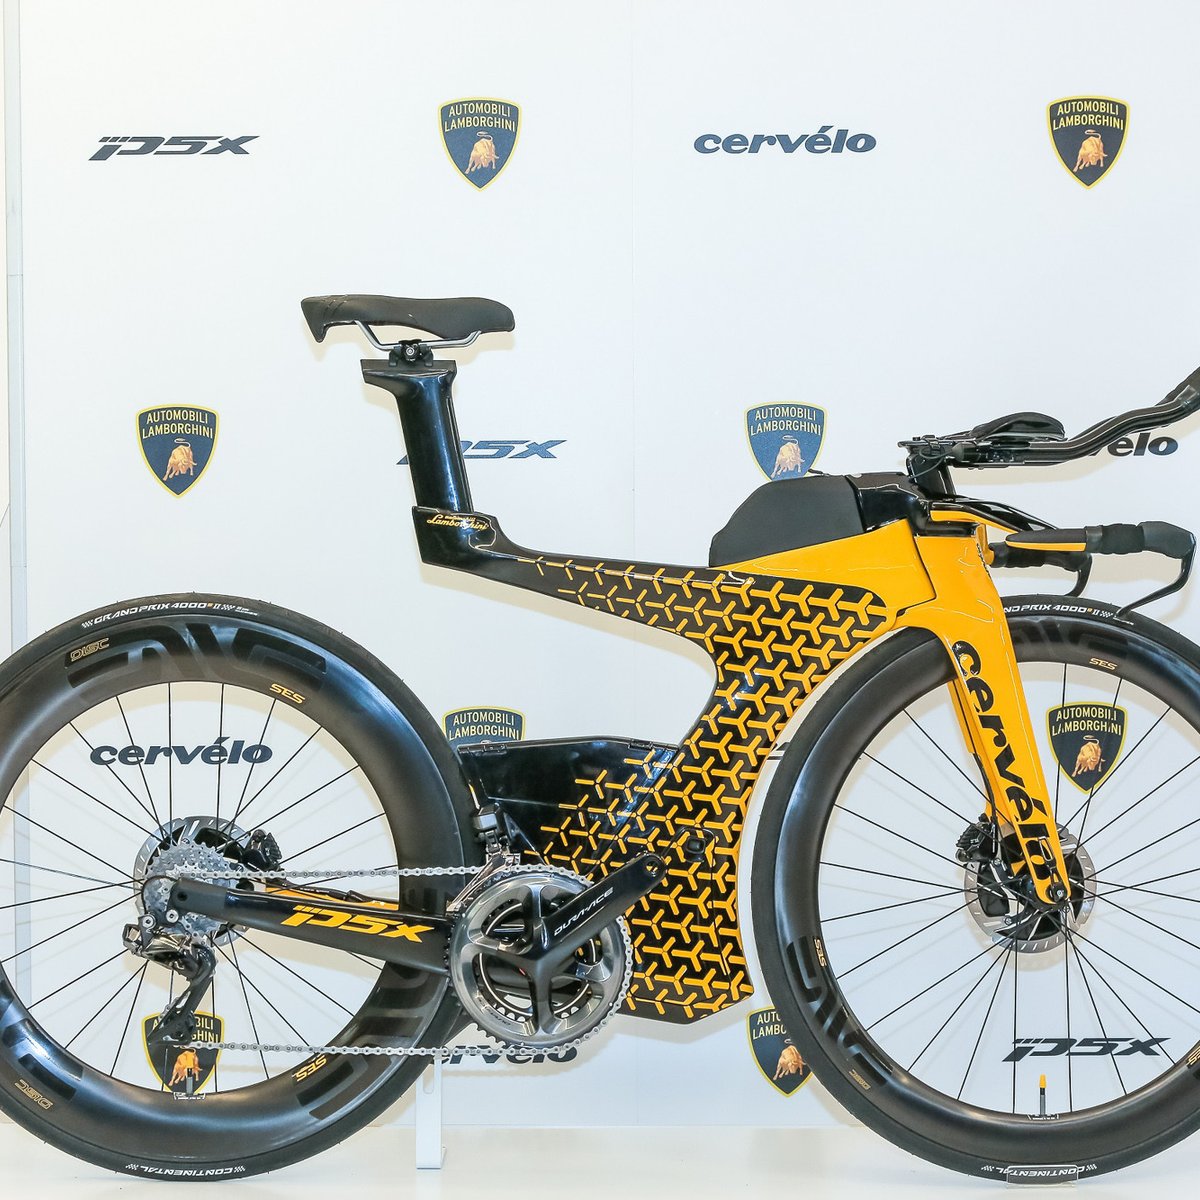 ランボルギーニ×サーヴェロ、世界25台限定のトライアスロンバイク 